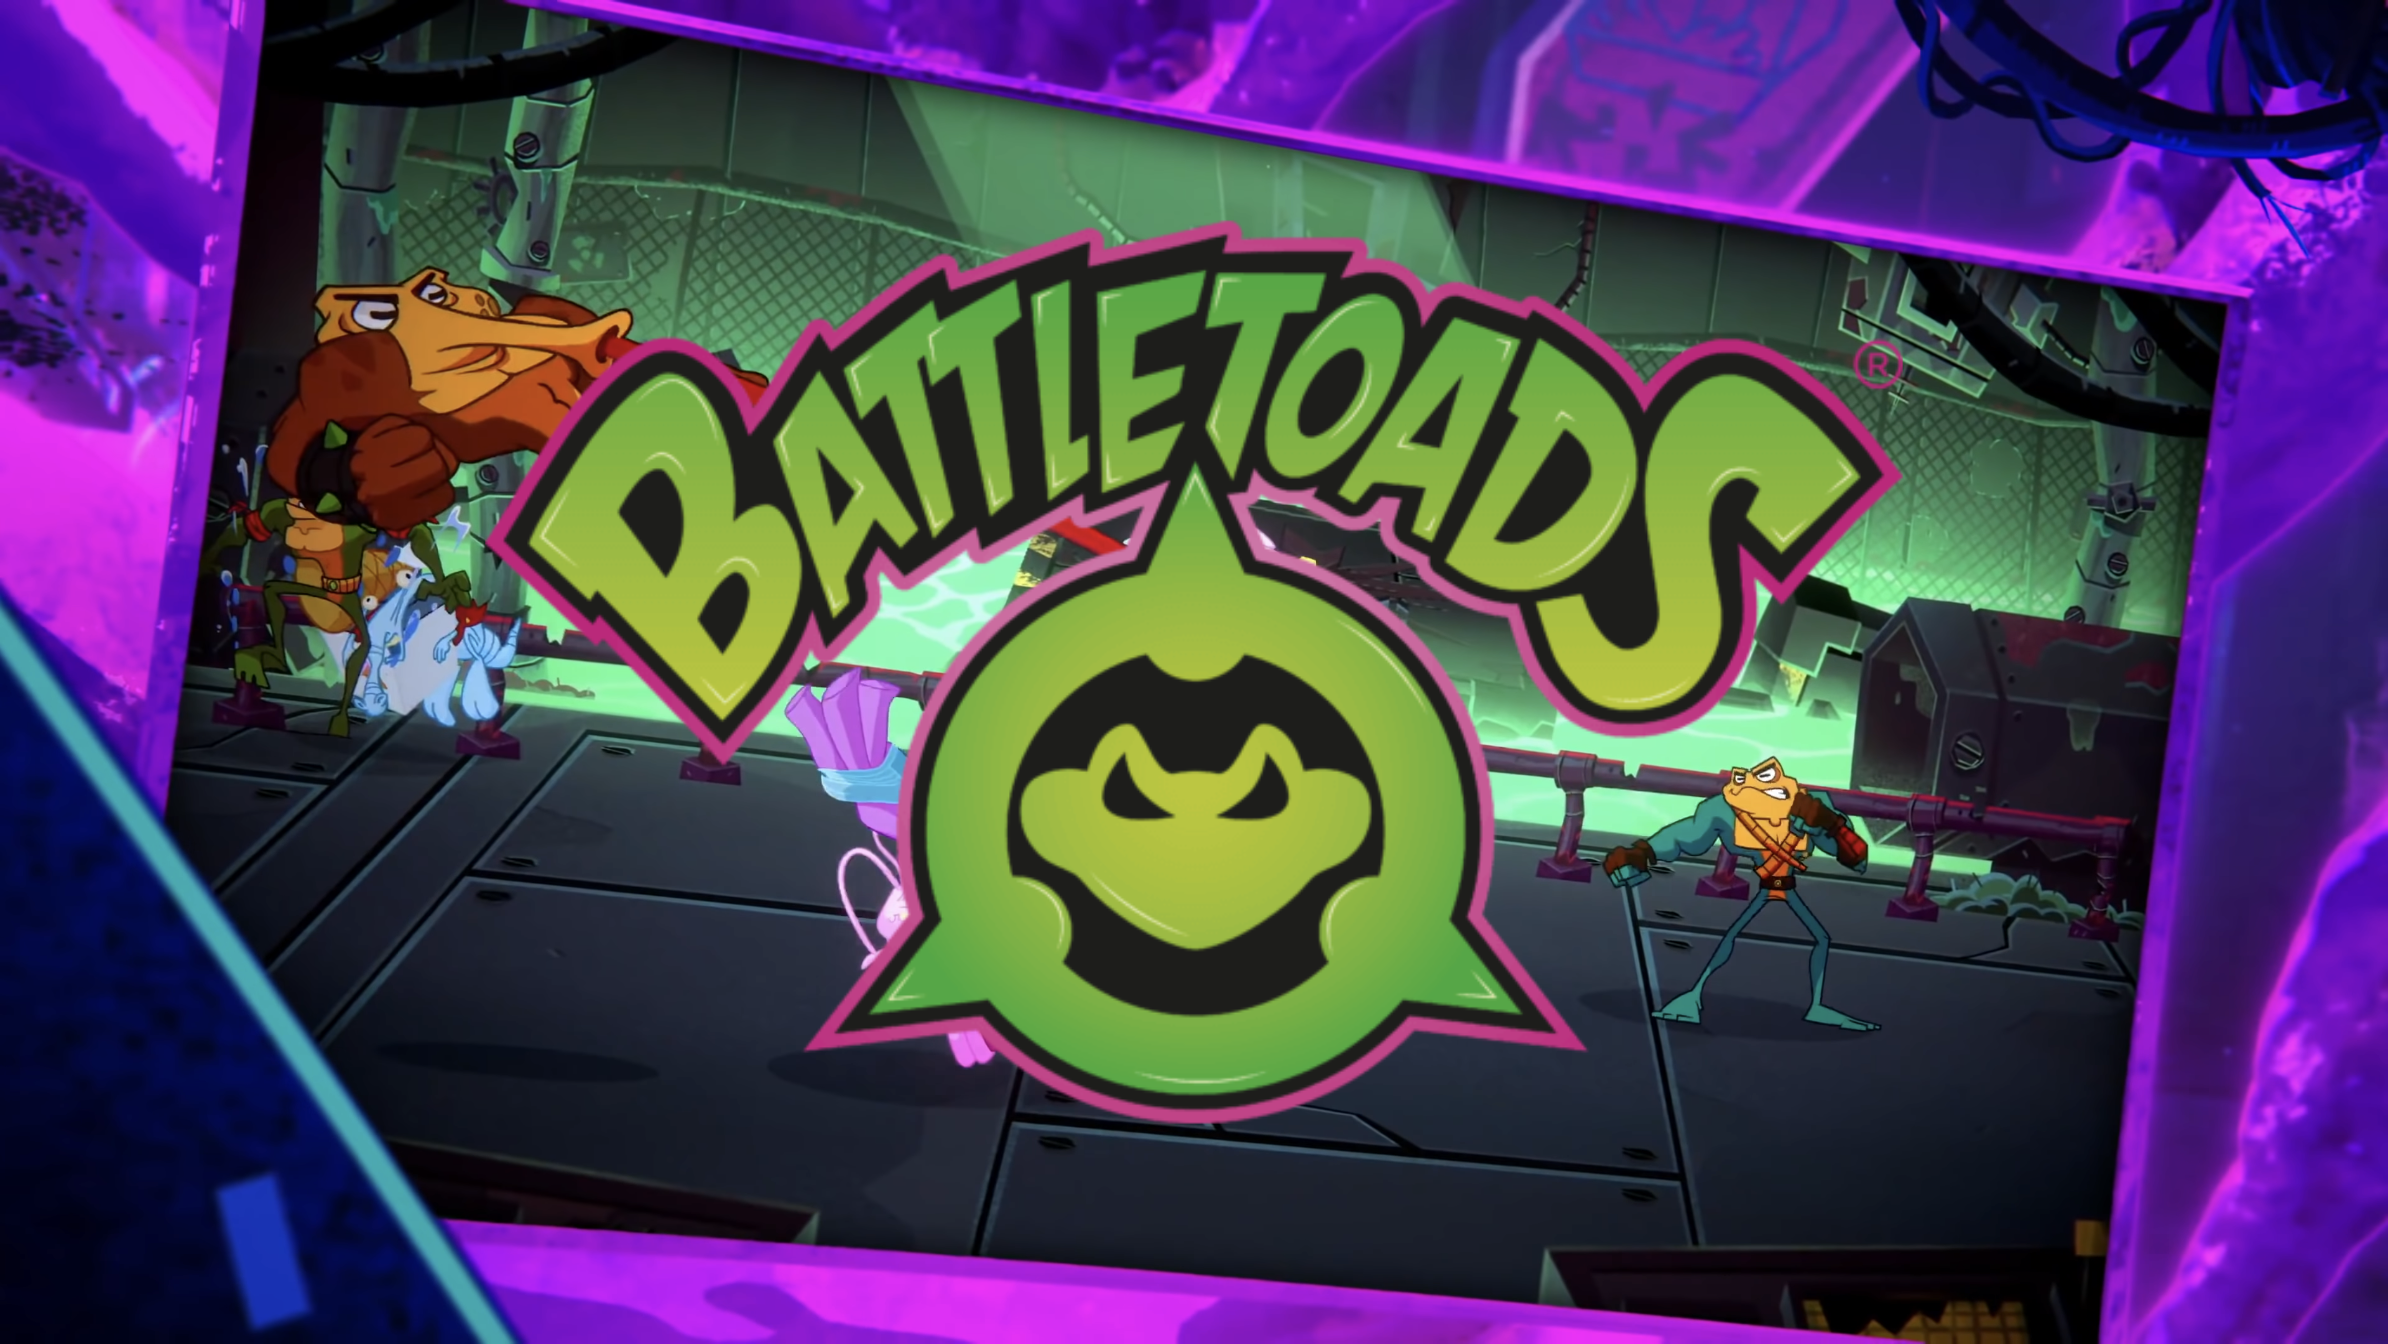 battletoads release date 2020